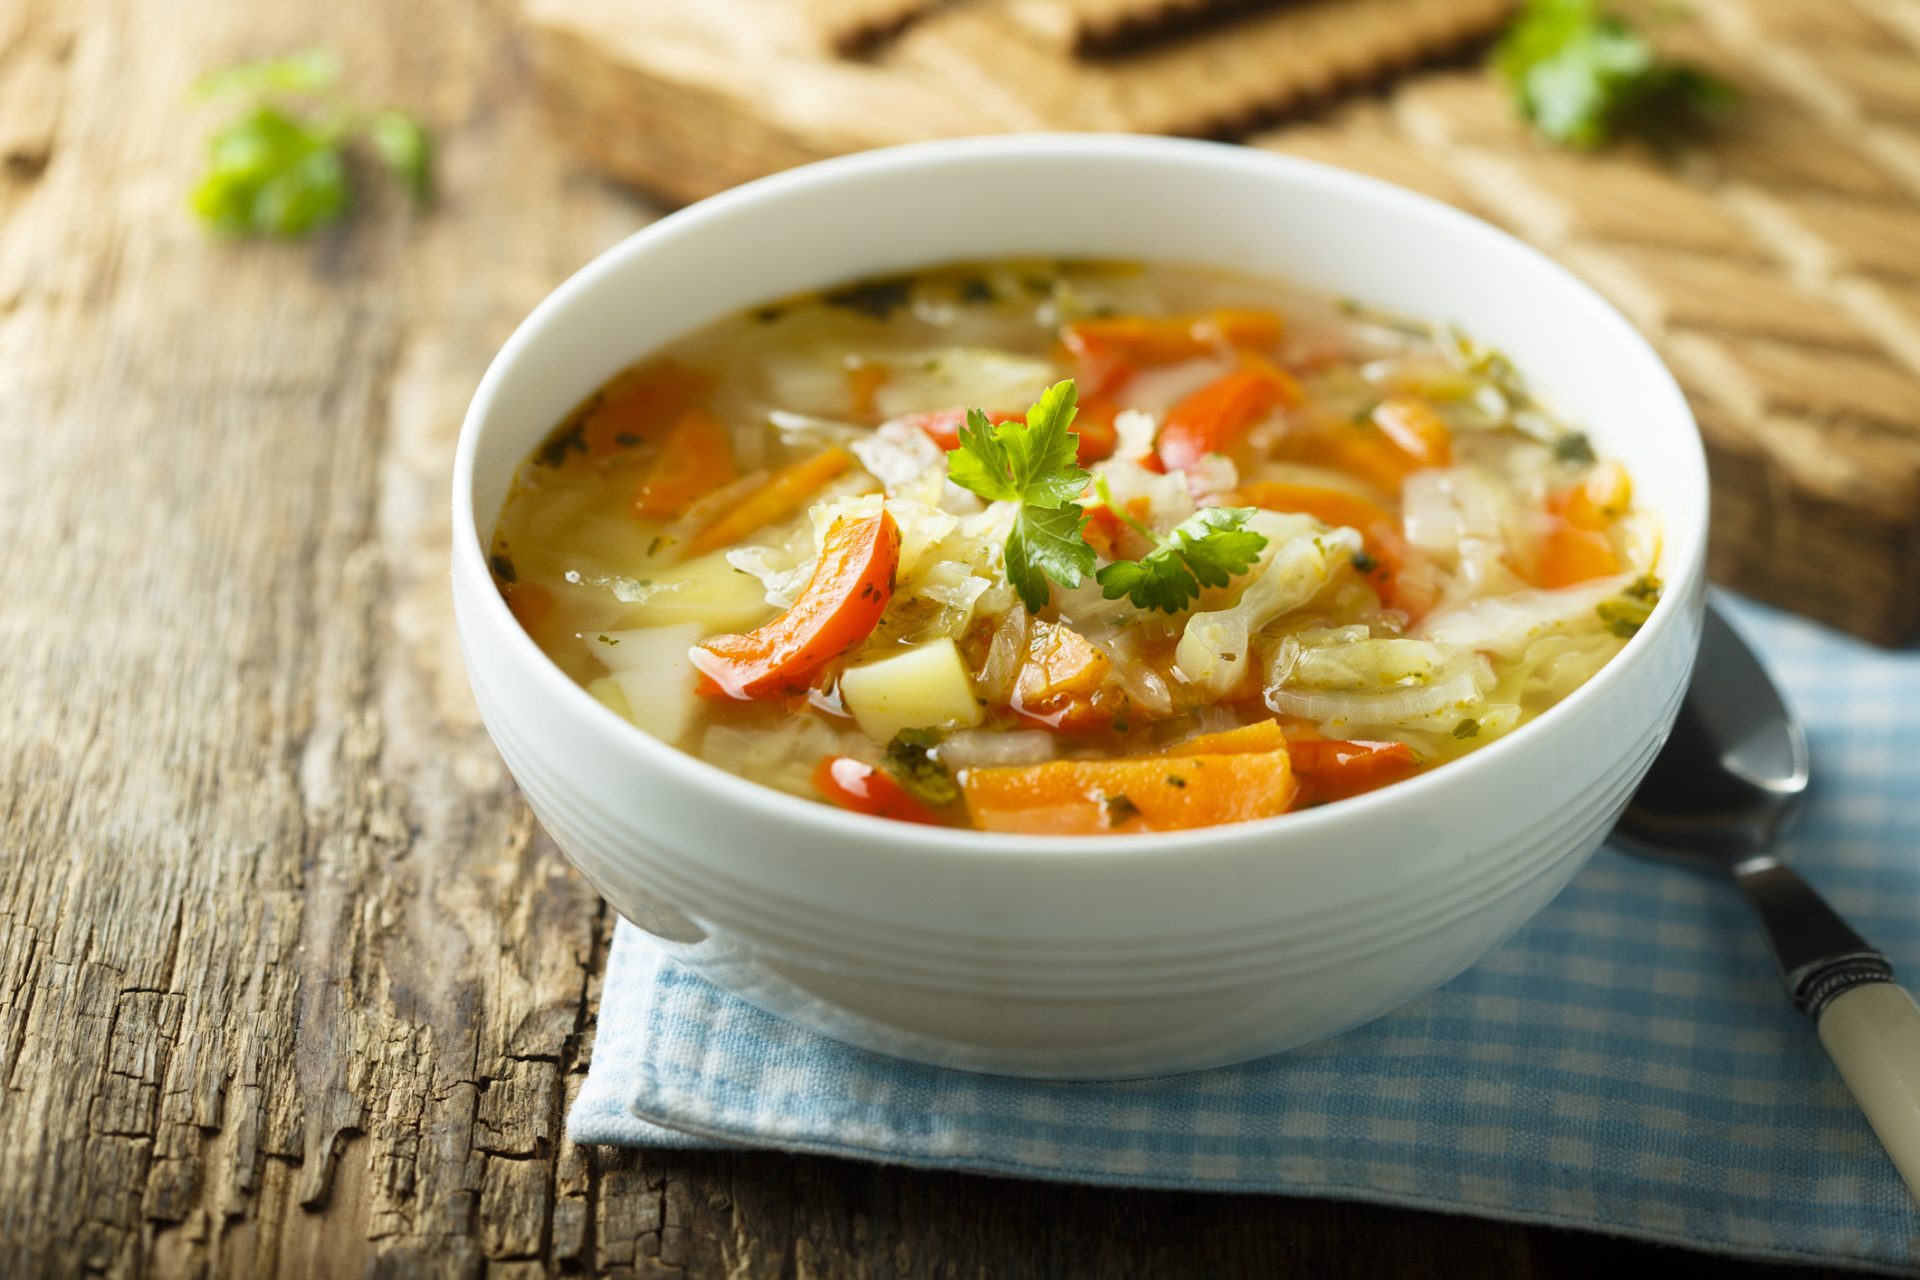 Cele mai bune supe care te ajuta sa slabesti sanatos iarna aceasta